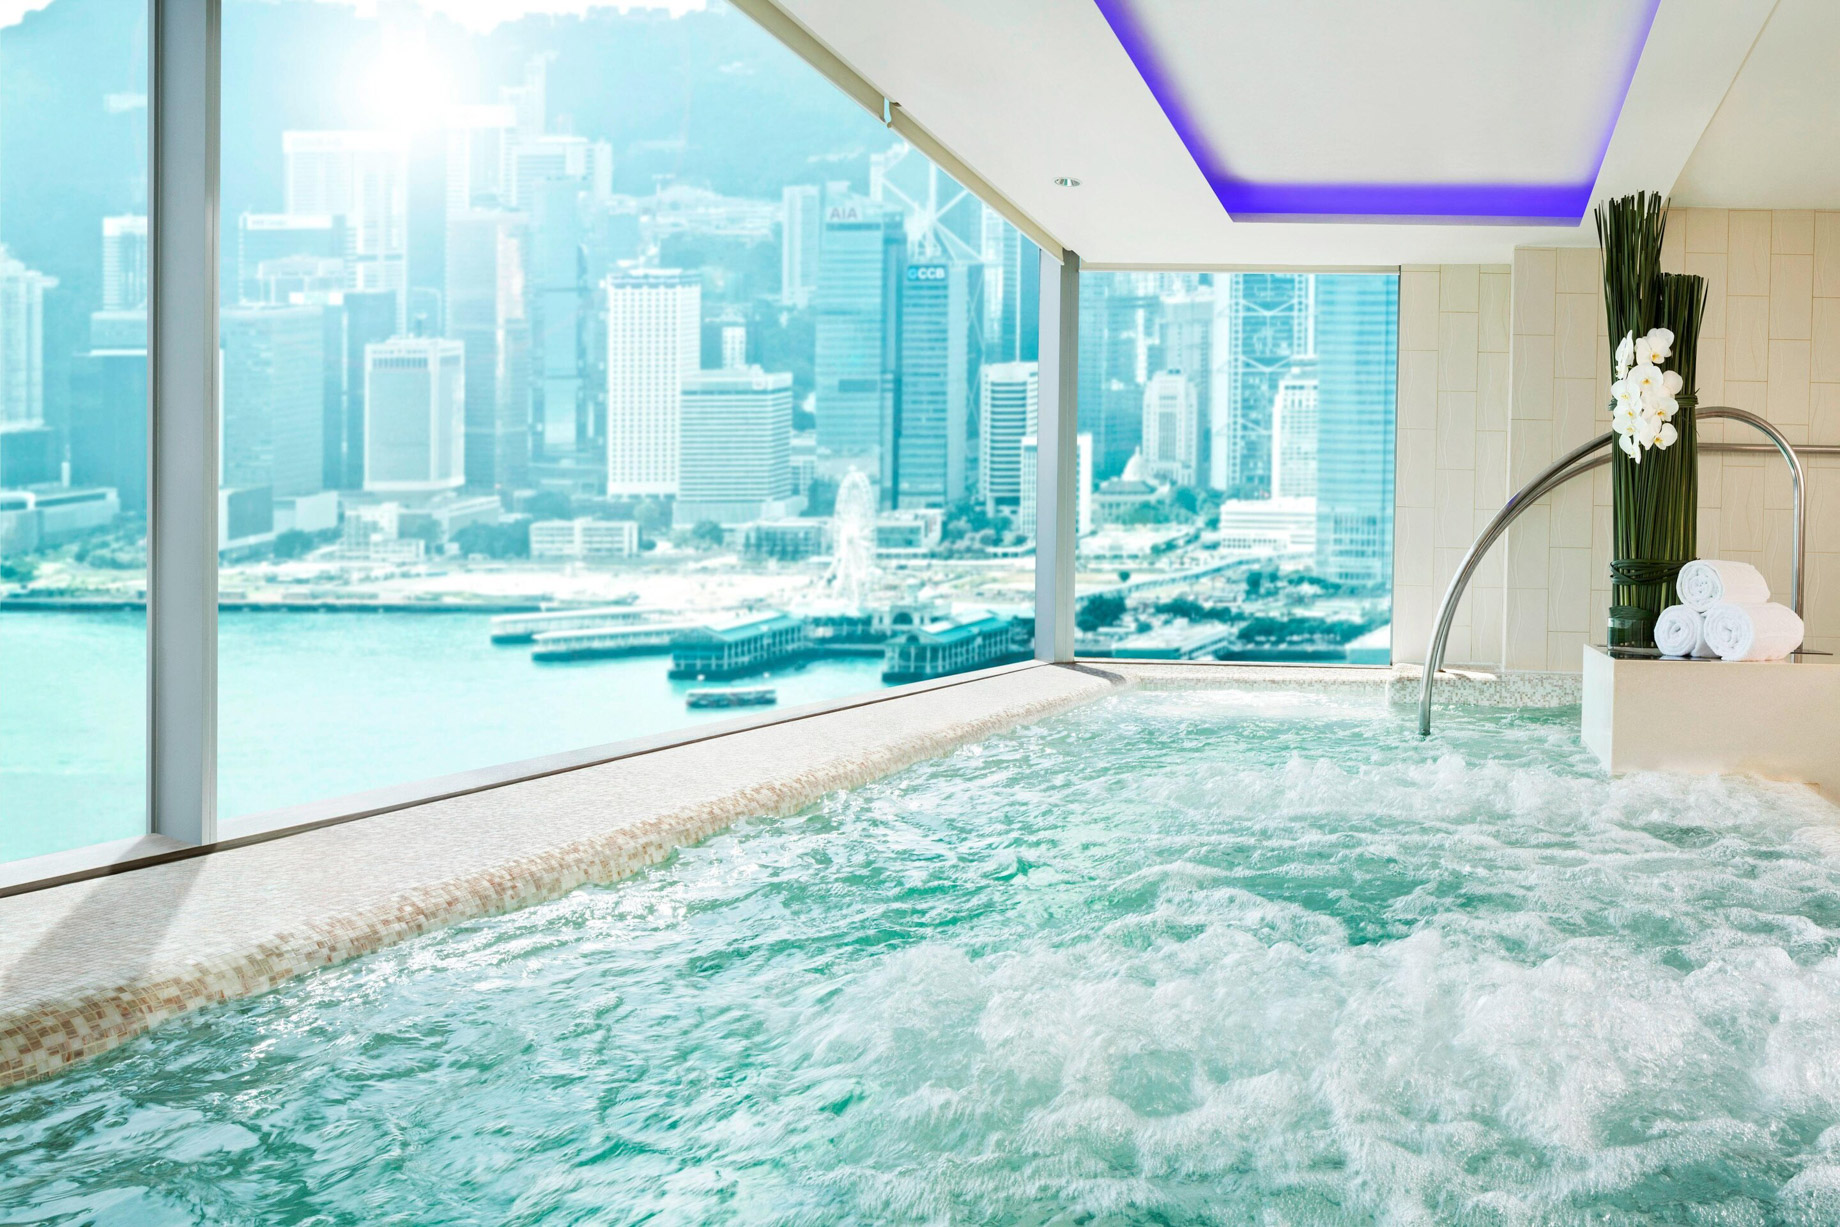 W Hong Kong Hotel - Hong Kong - Bliss Spa Pool View